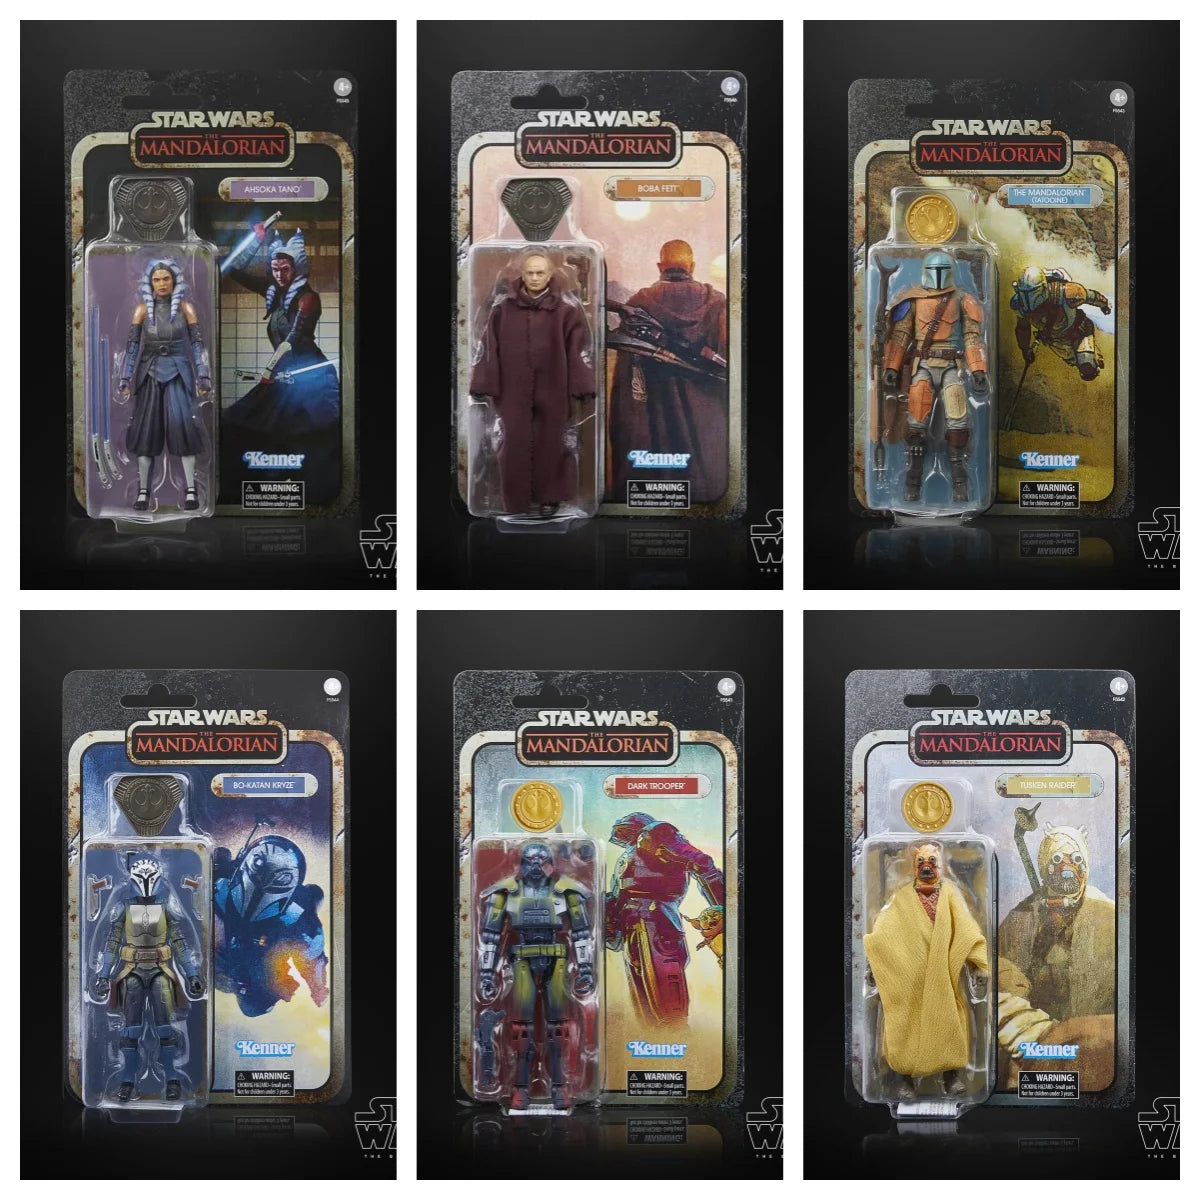 Figura de Star Wars de 6 pulgadas, Kenner Retro, figuras de acción mandalorianas Tatooine, modelo coleccionable, decoración de escritorio, juguete, regalo para niños y adultos